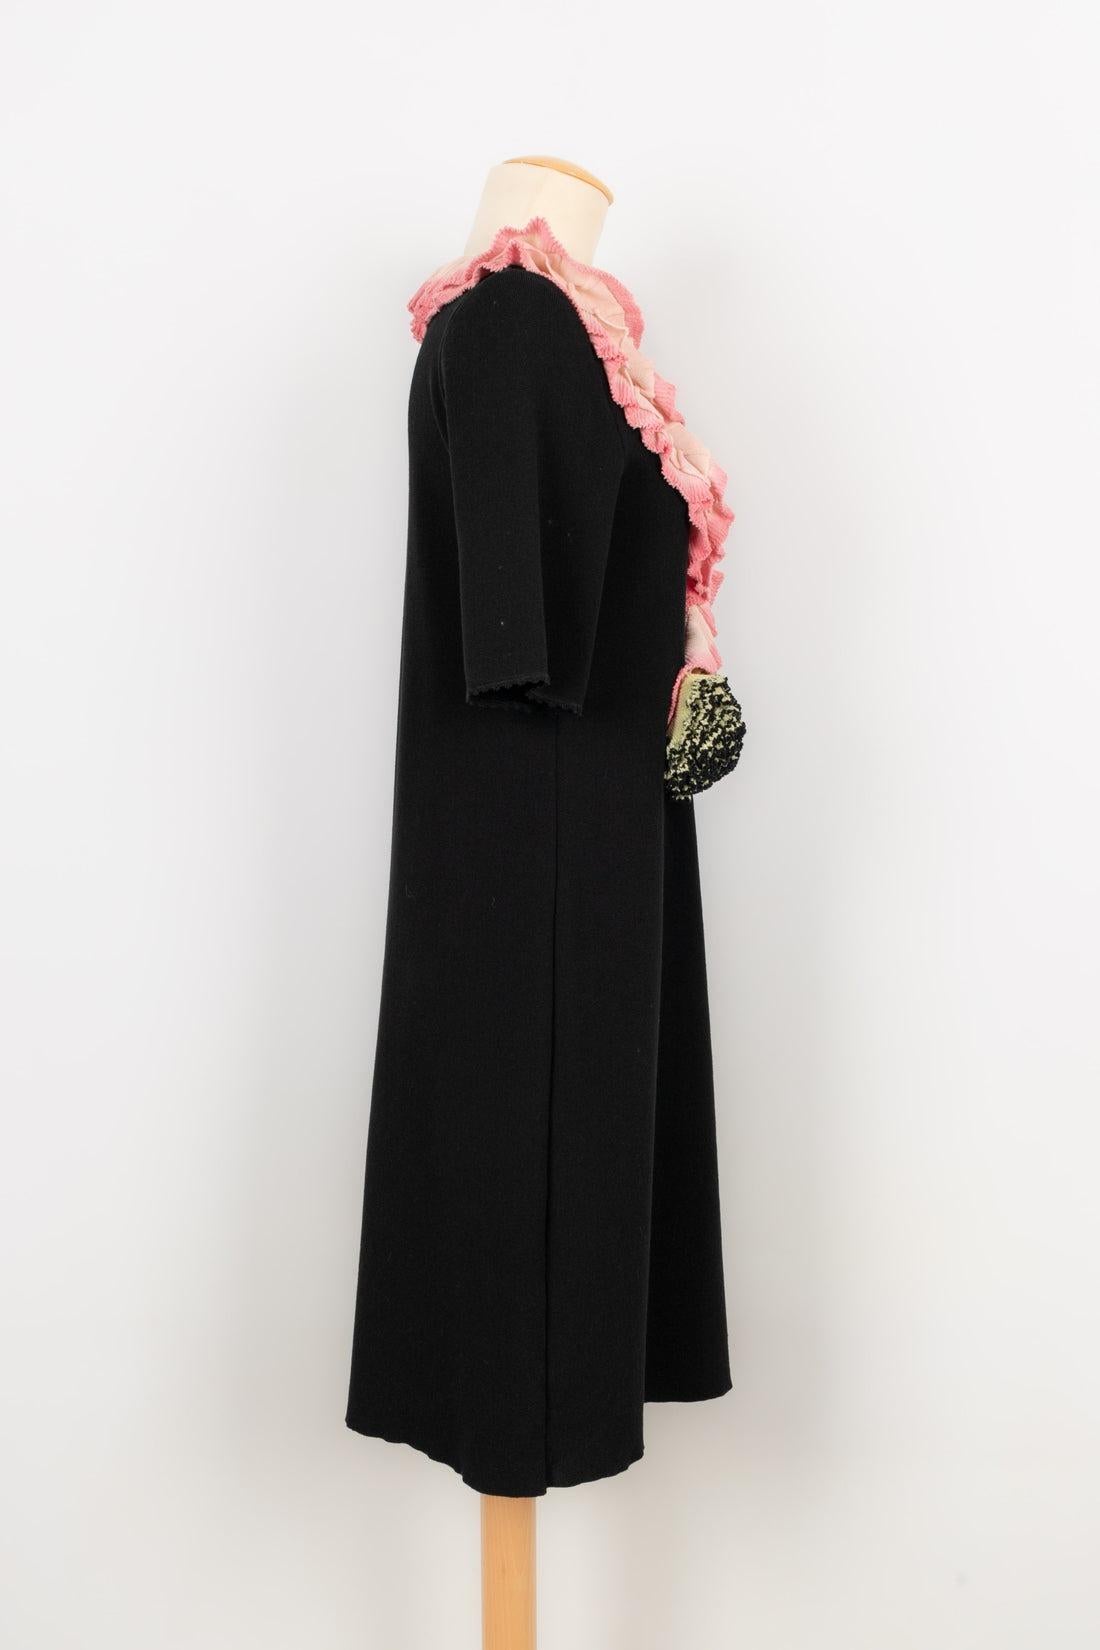 Women's Christian Lacroix Blended Cotton Dress For Sale